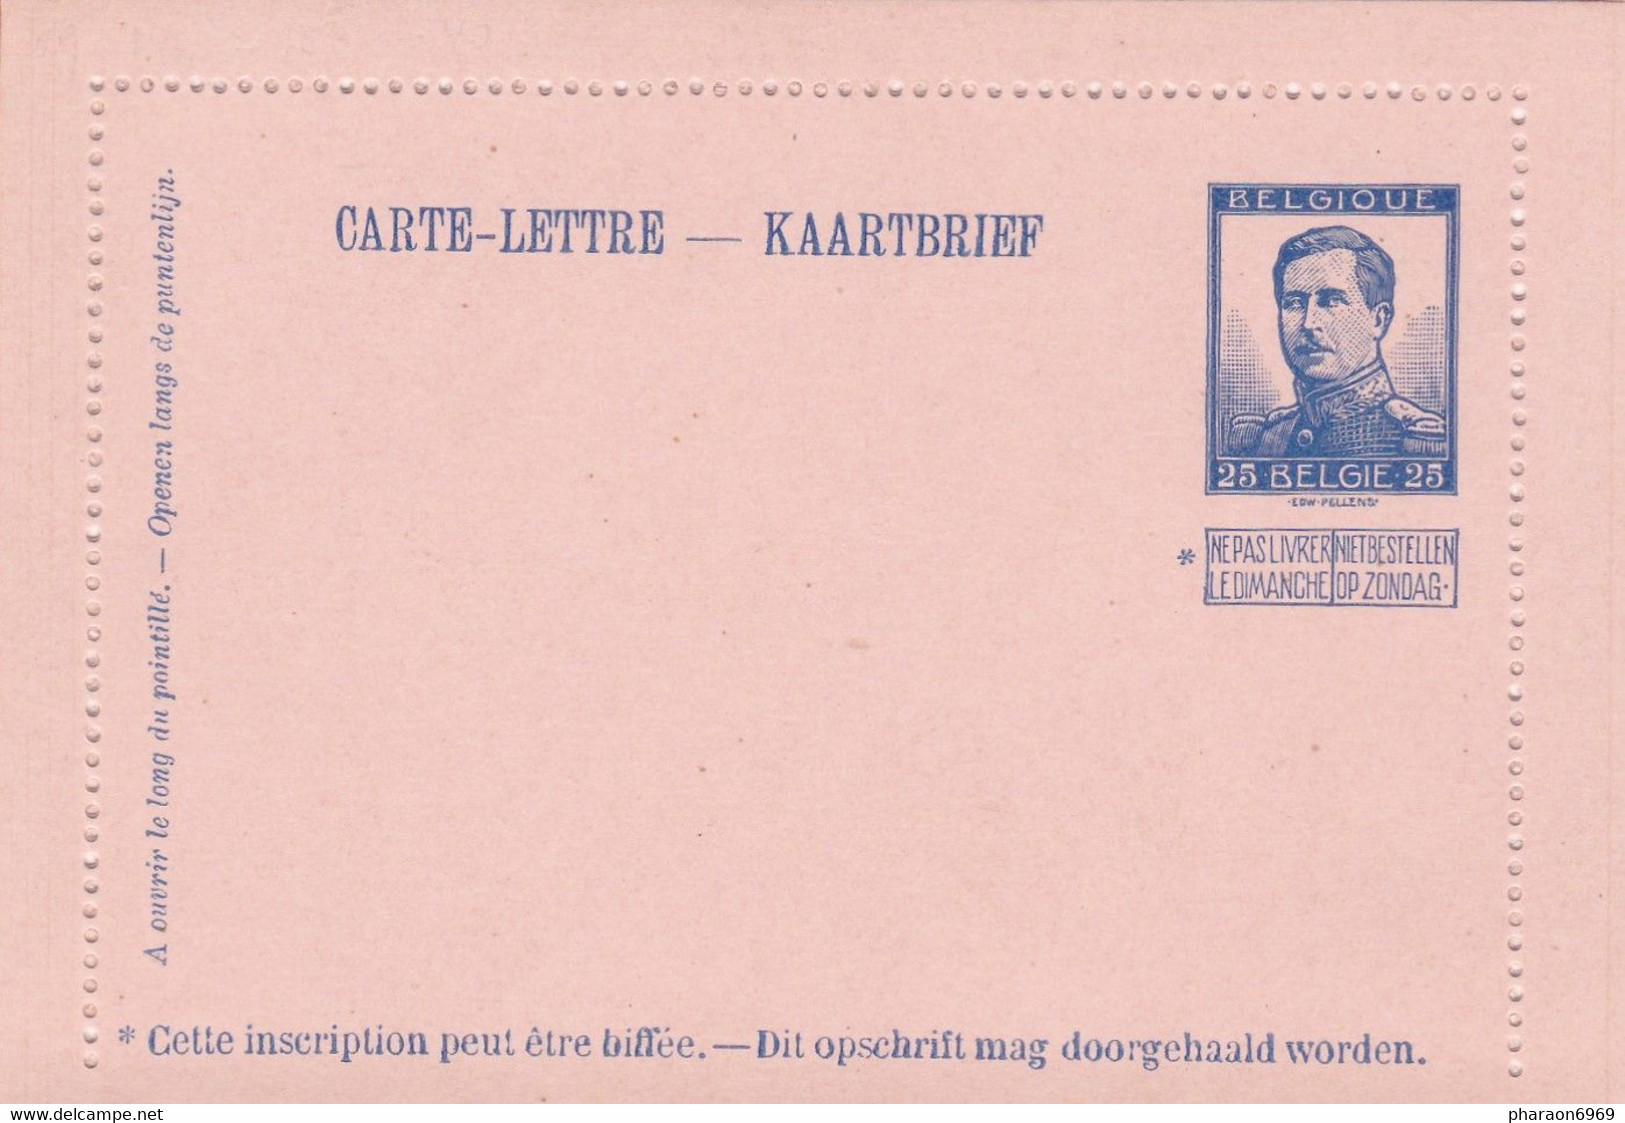 Carte Lettre Entier Postal - Cartes-lettres